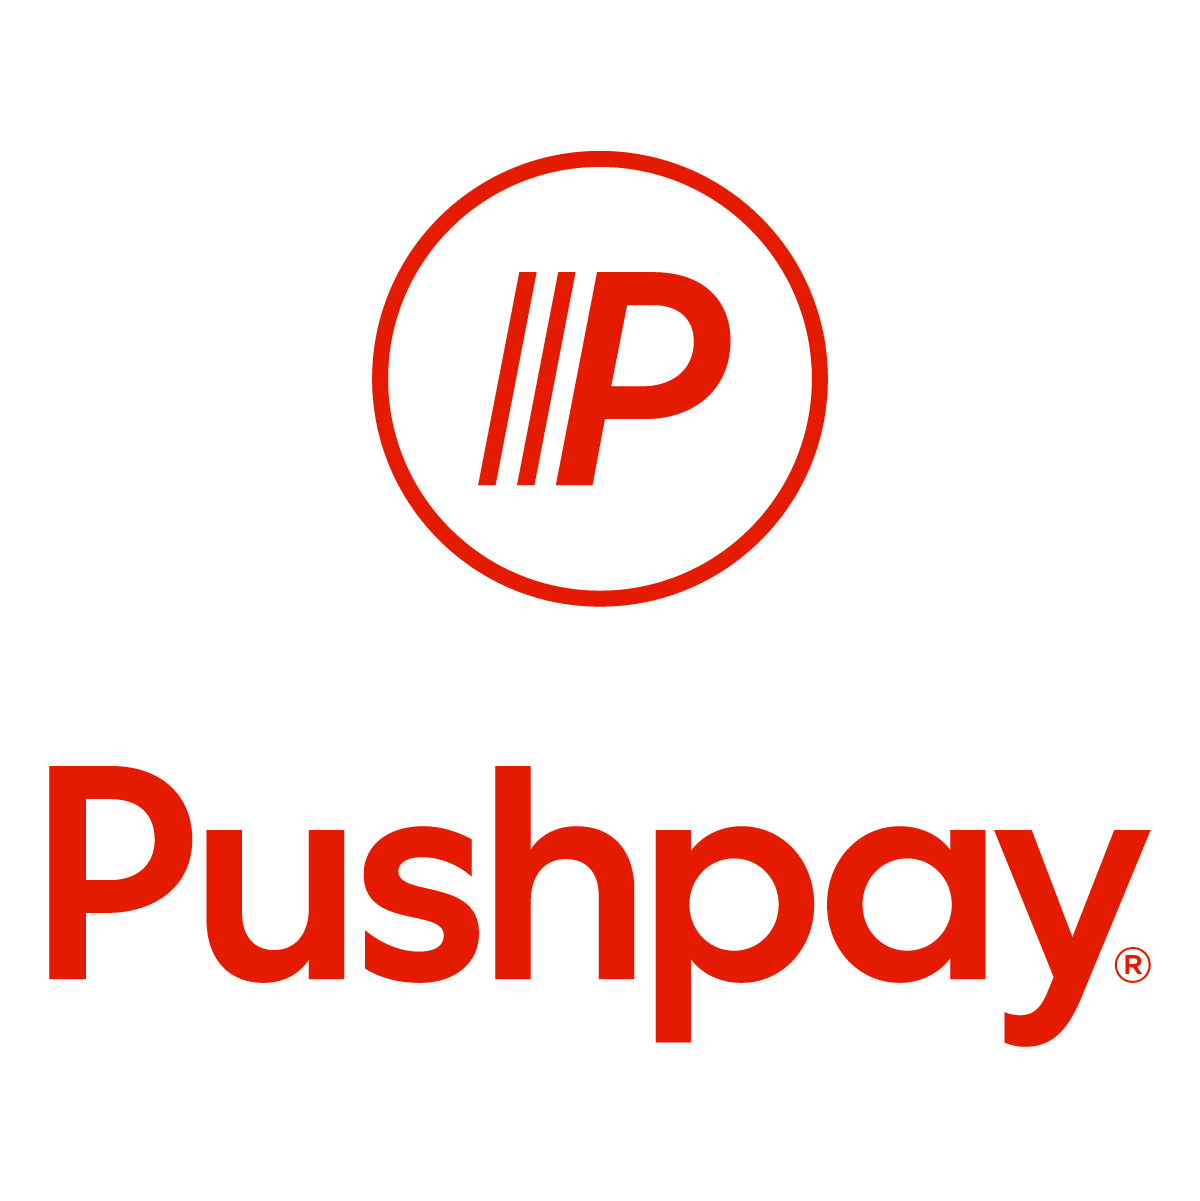 Pushpay Wikipedia